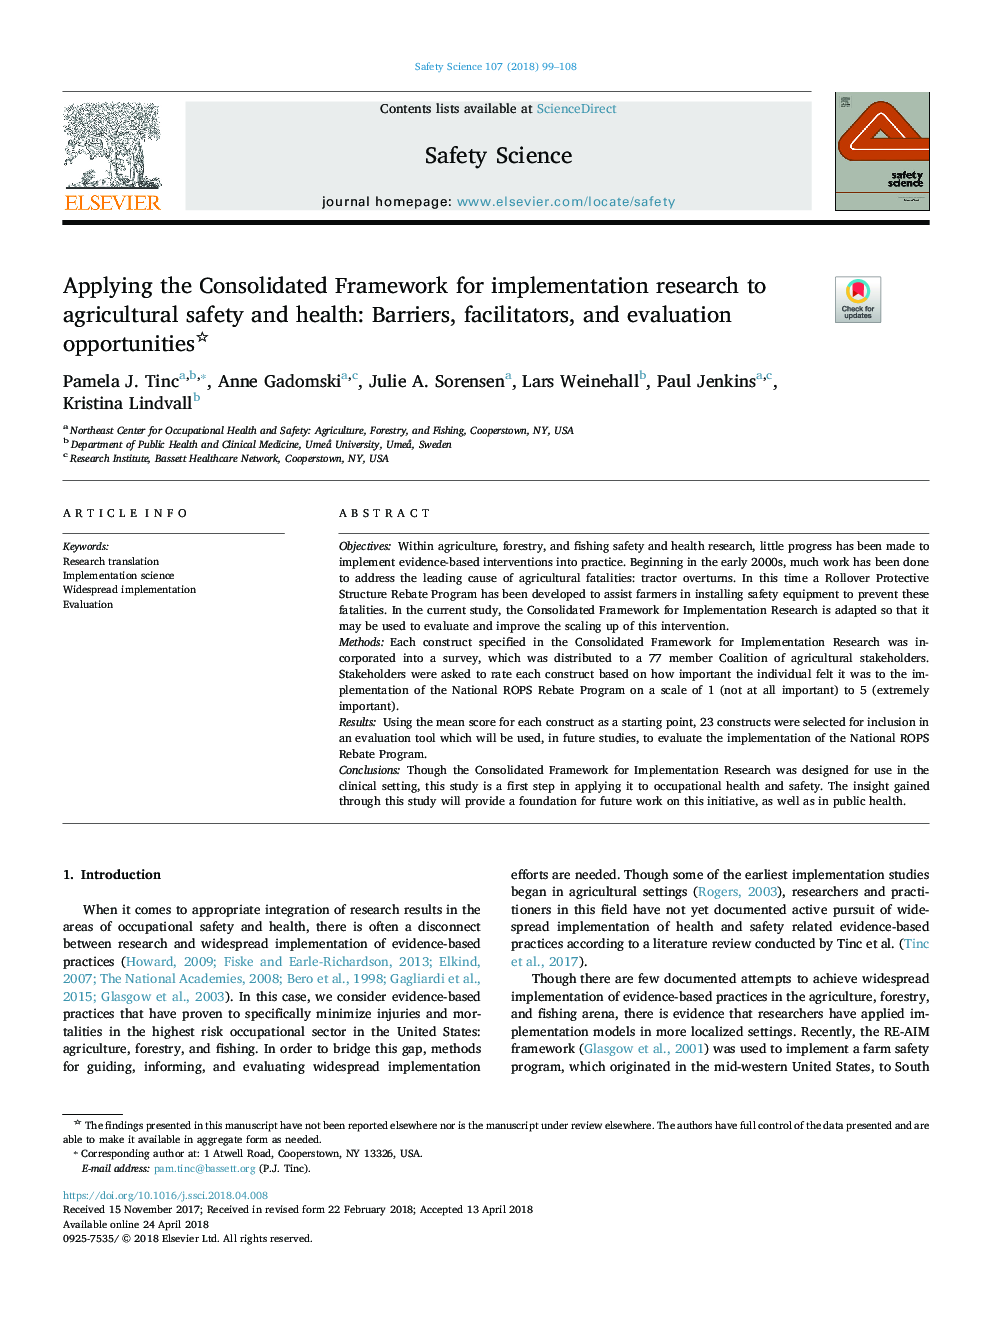 استفاده از چارچوب تلفیقی برای تحقیقات پیاده سازی برای ایمنی و بهداشت کشاورزی: ​​موانع، تسهیل کننده ها و فرصت های ارزیابی 